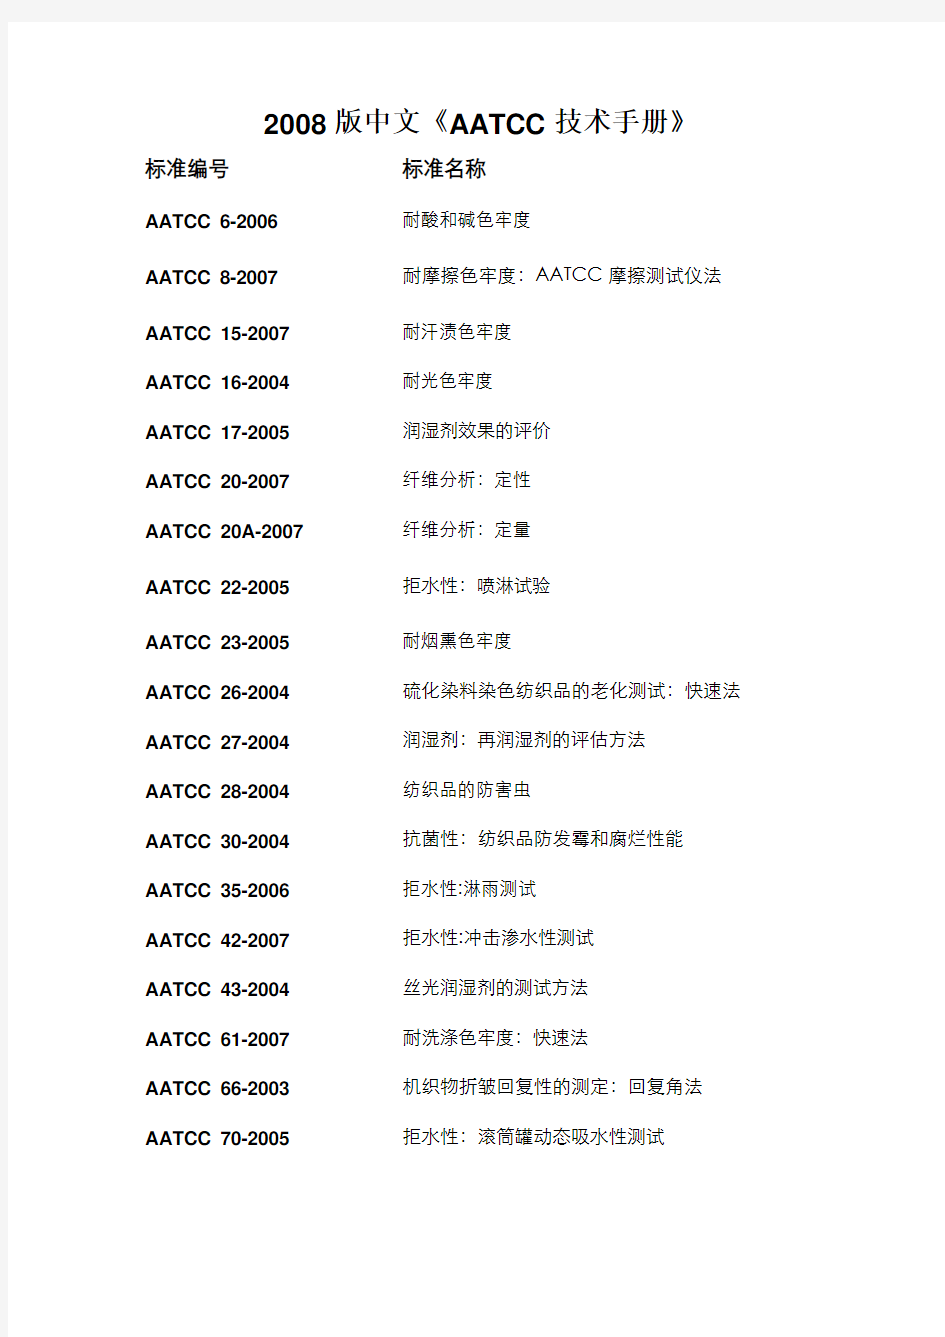 2008版中文AATCC技术手册